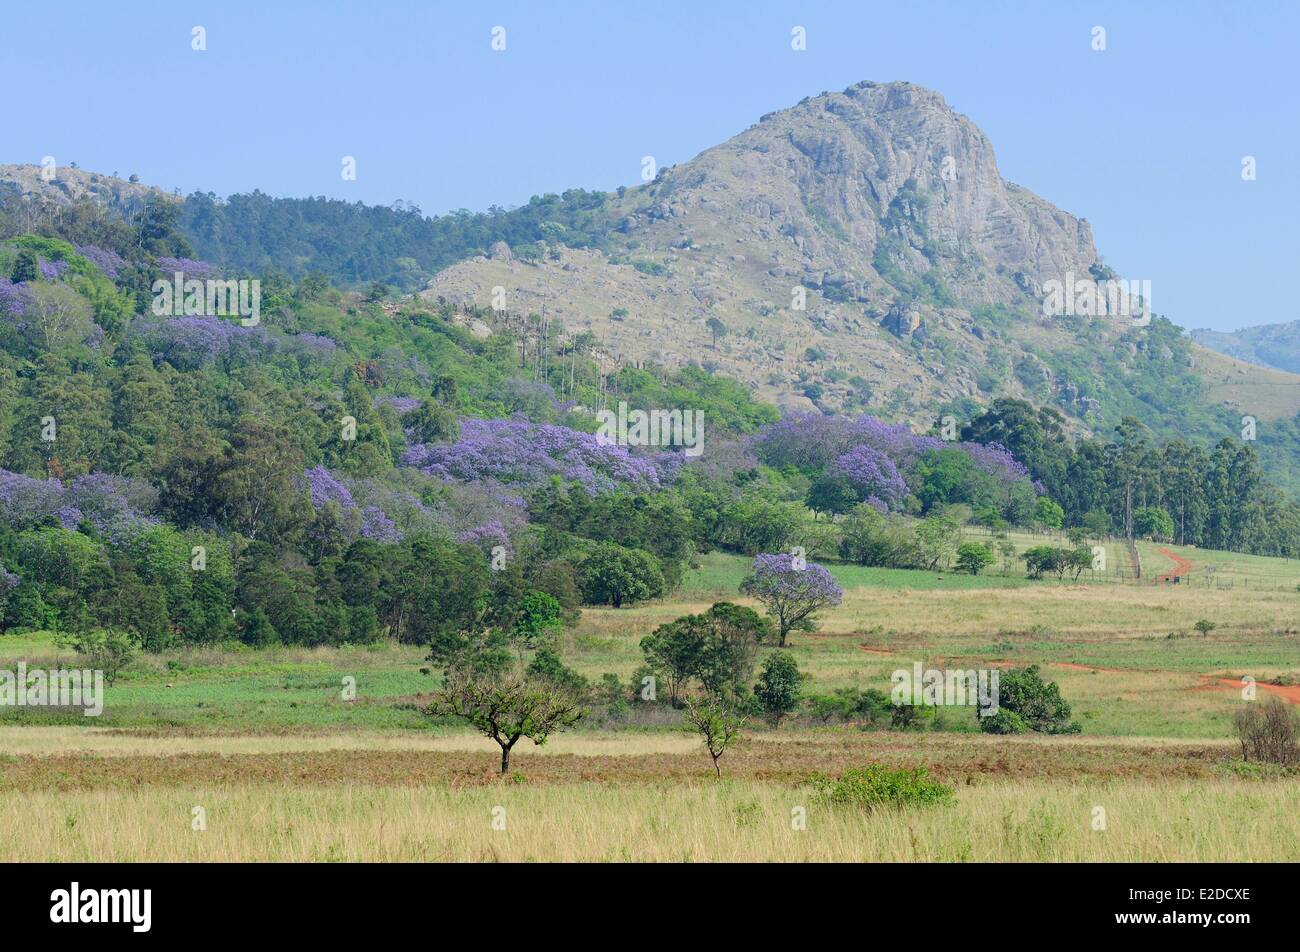 District de la vallée d'Ezulwini Swaziland Hhohho (vallée du ciel) Mlilwane Wildlife Sanctuary jacaranda en fleurs et l'exécution Banque D'Images